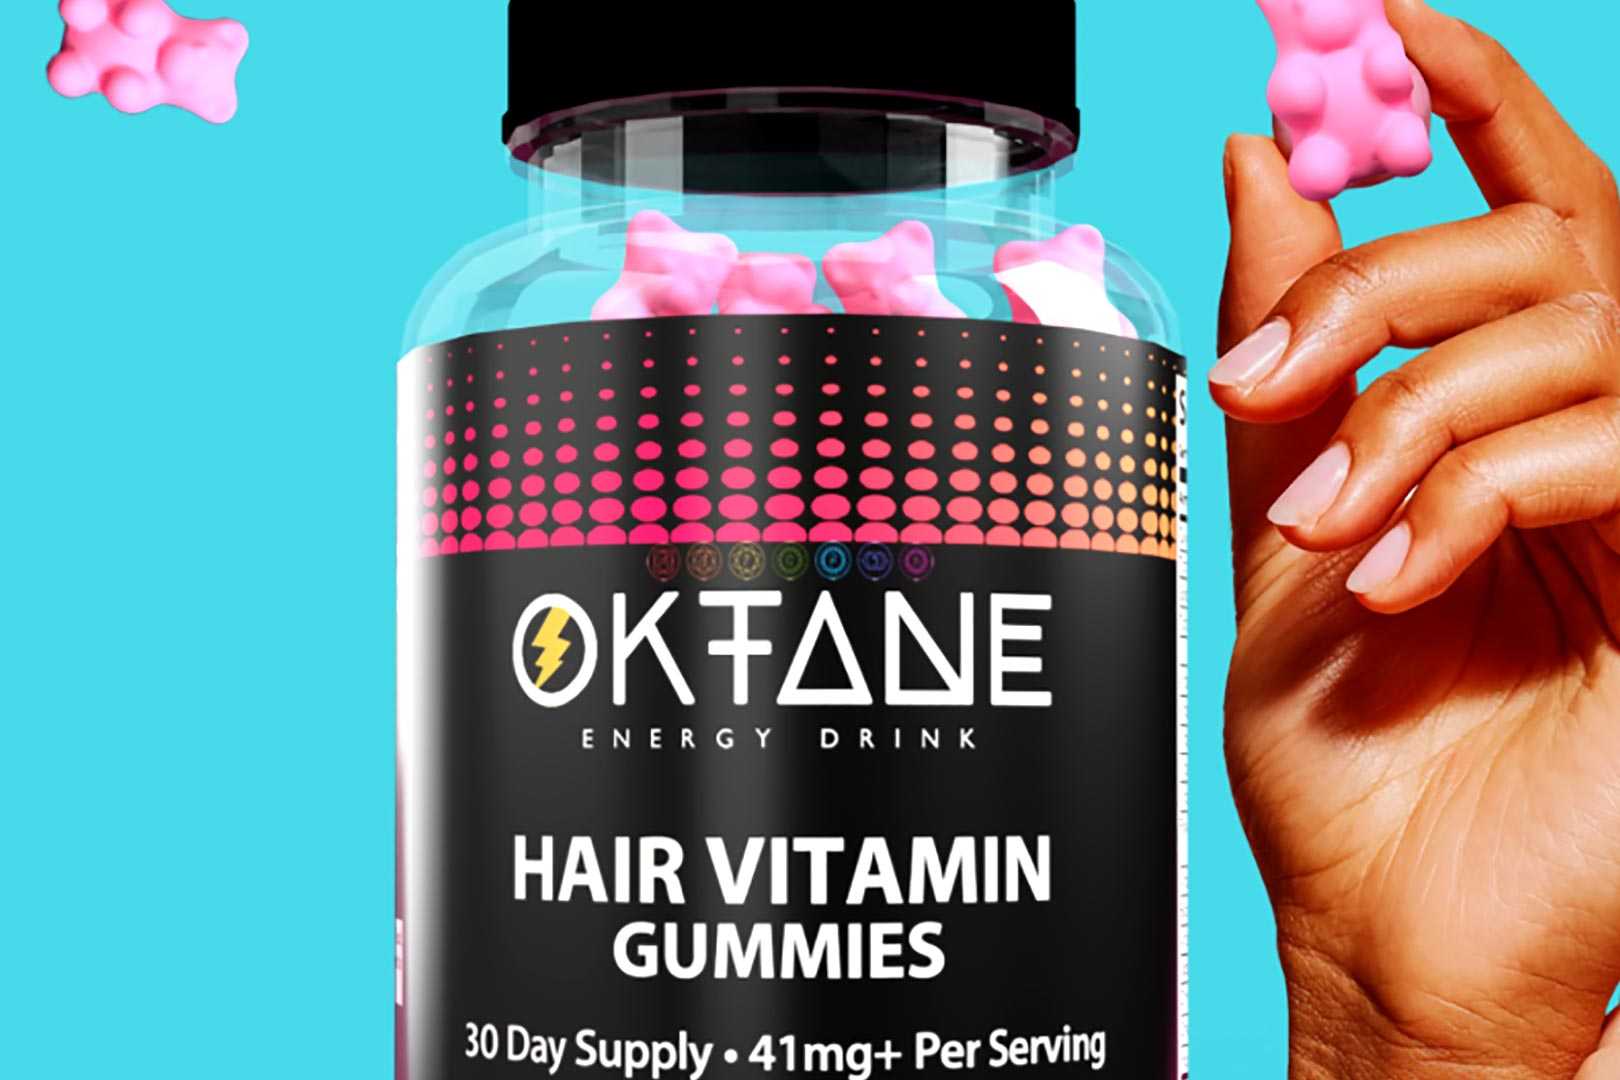 Oktane Hair Vitamin Gummies